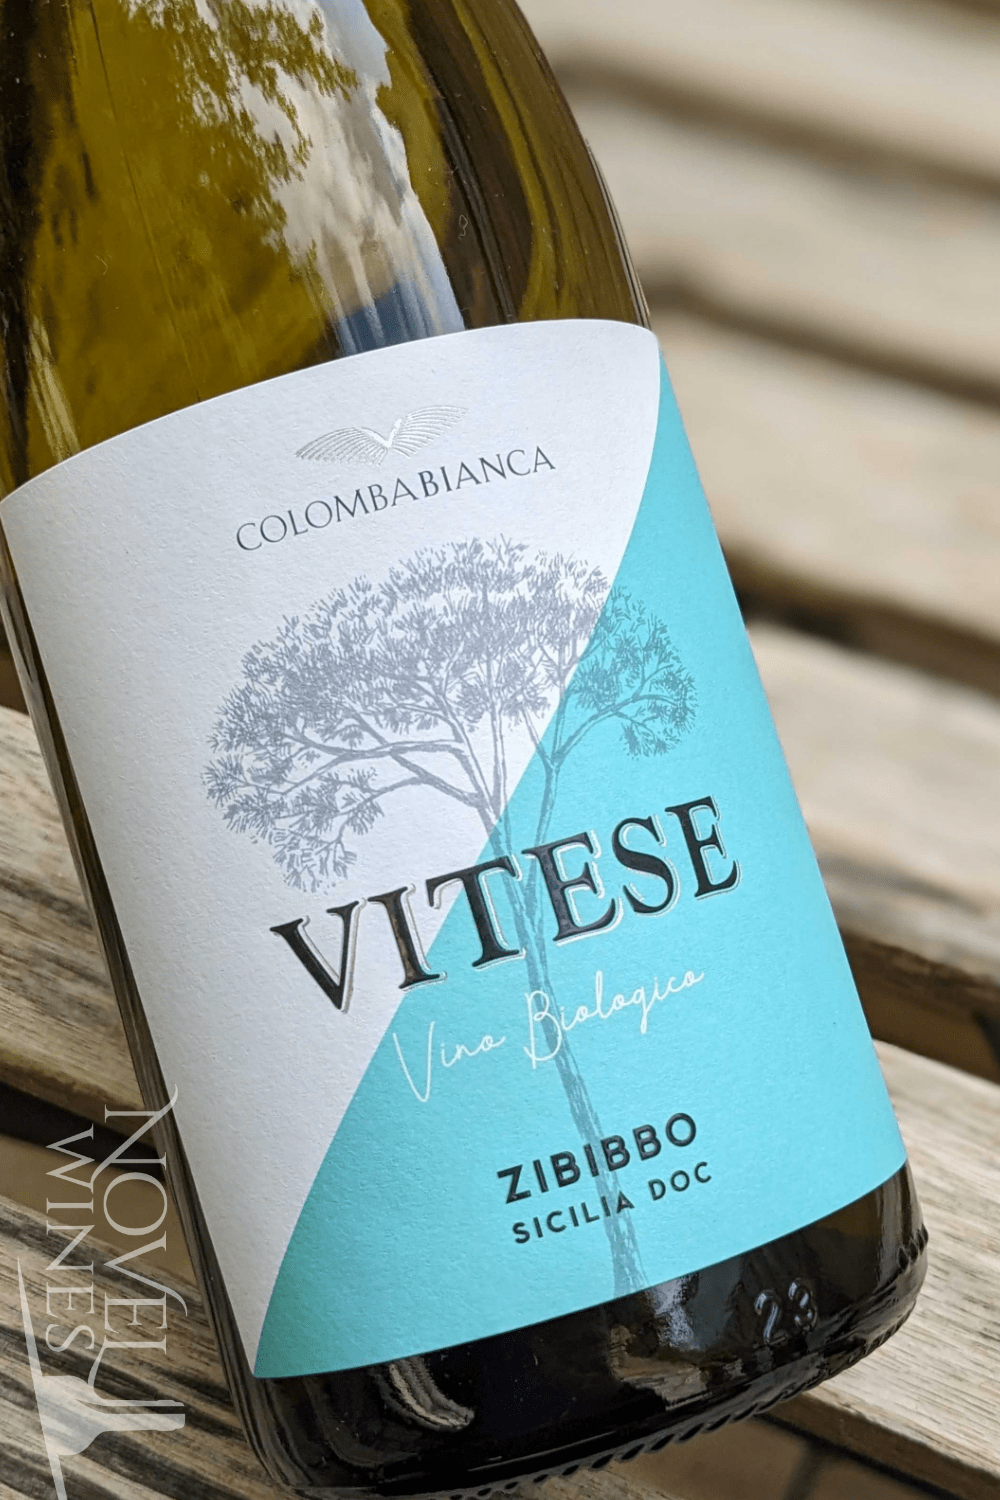 Colomba Bianca White Wine Colomba Bianca 'Vitese' Zibibbo 2022, Sicily